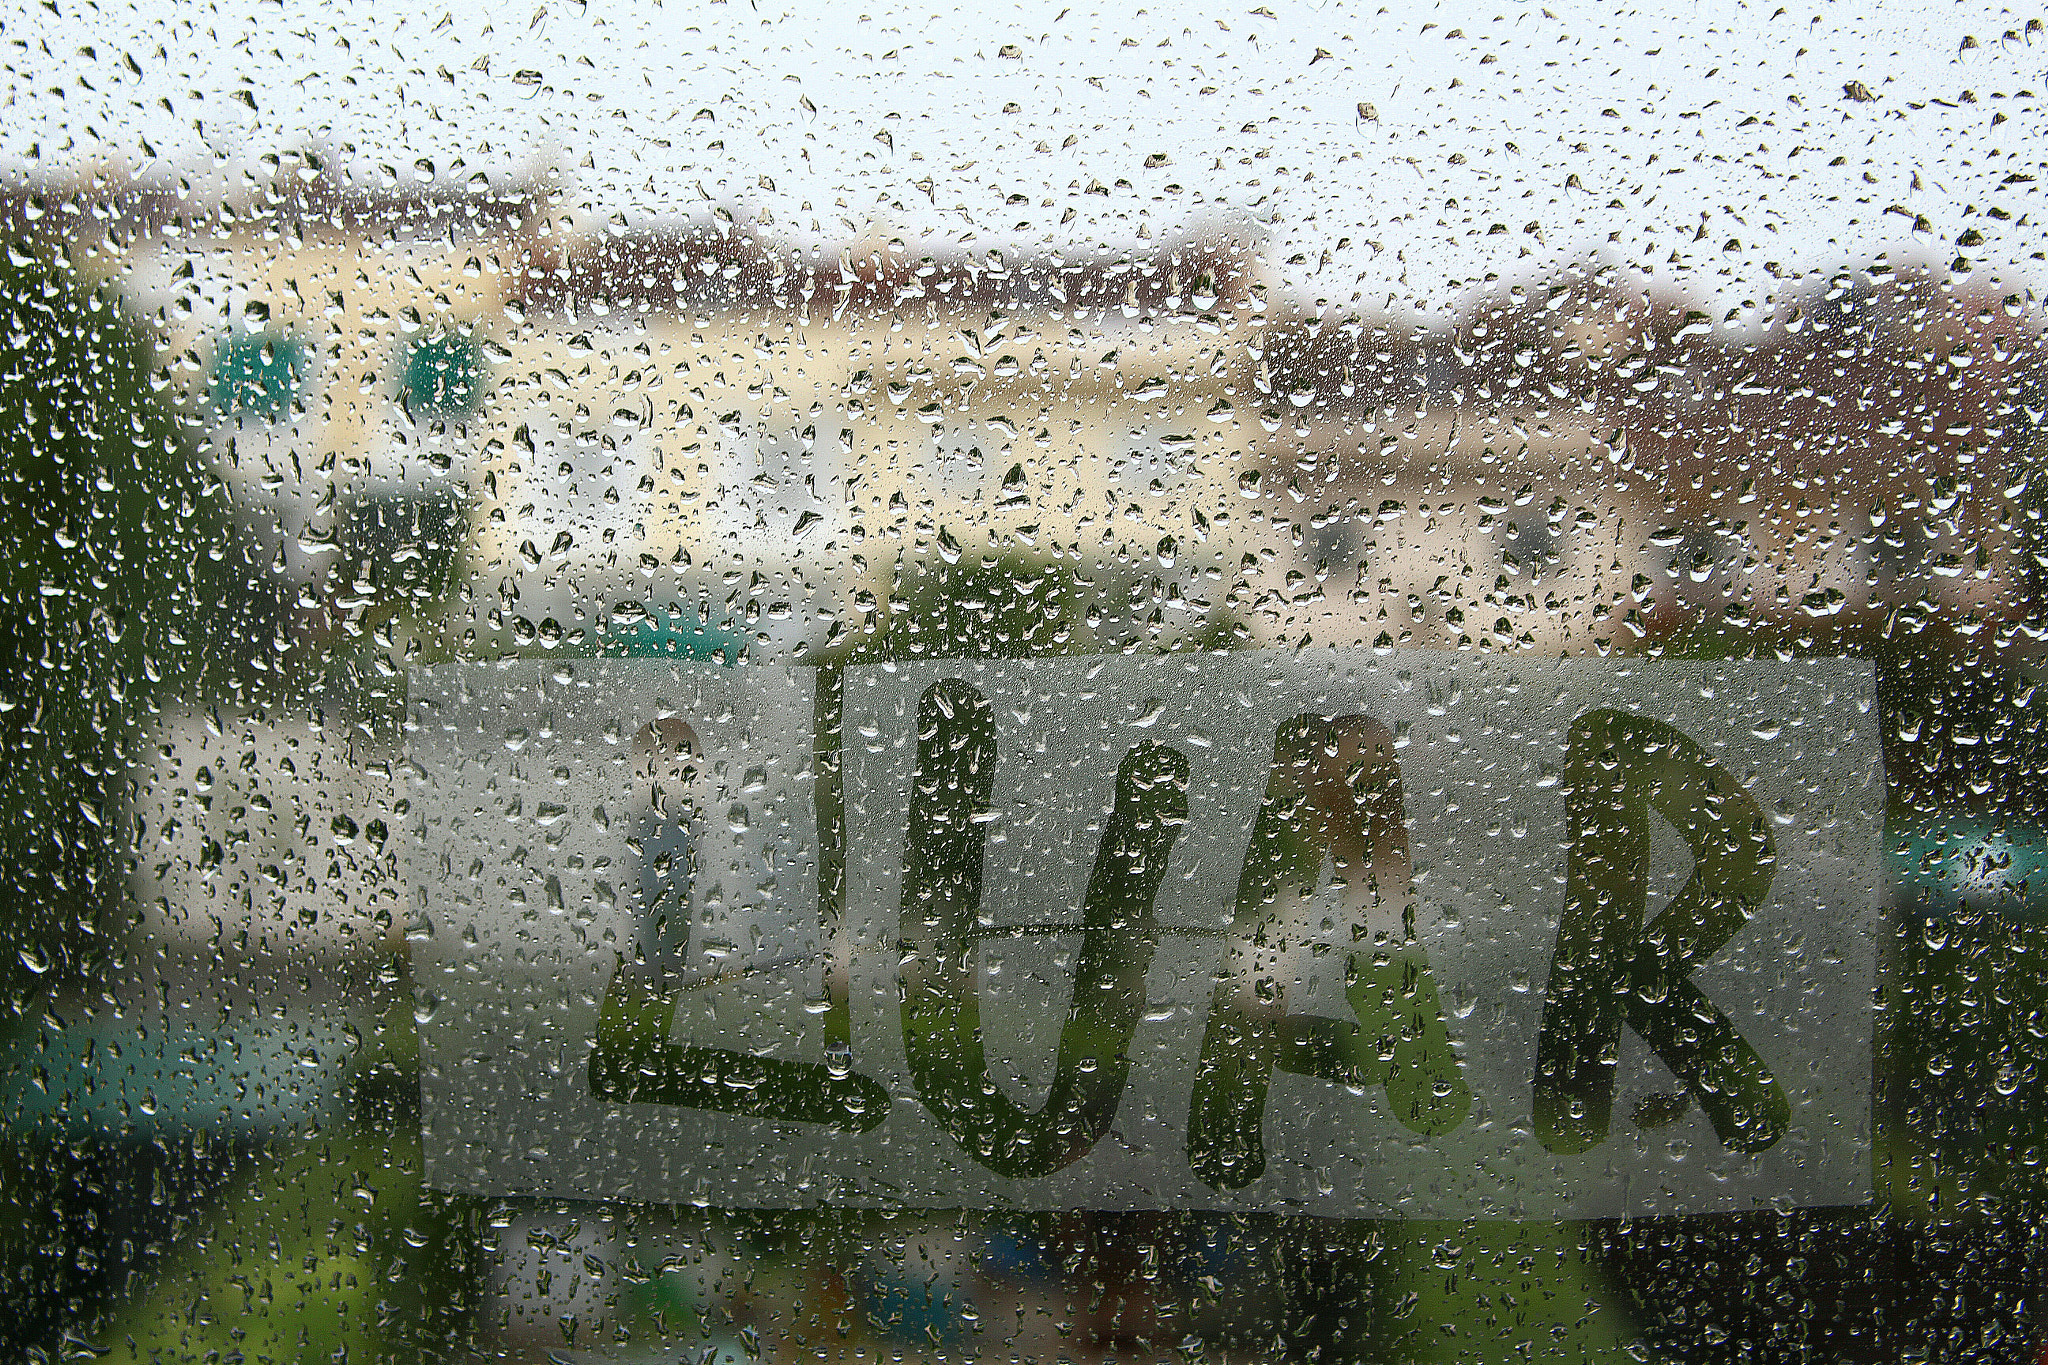 Canon EOS 700D (EOS Rebel T5i / EOS Kiss X7i) sample photo. Hoy día de lluvia desde la ventana. photography